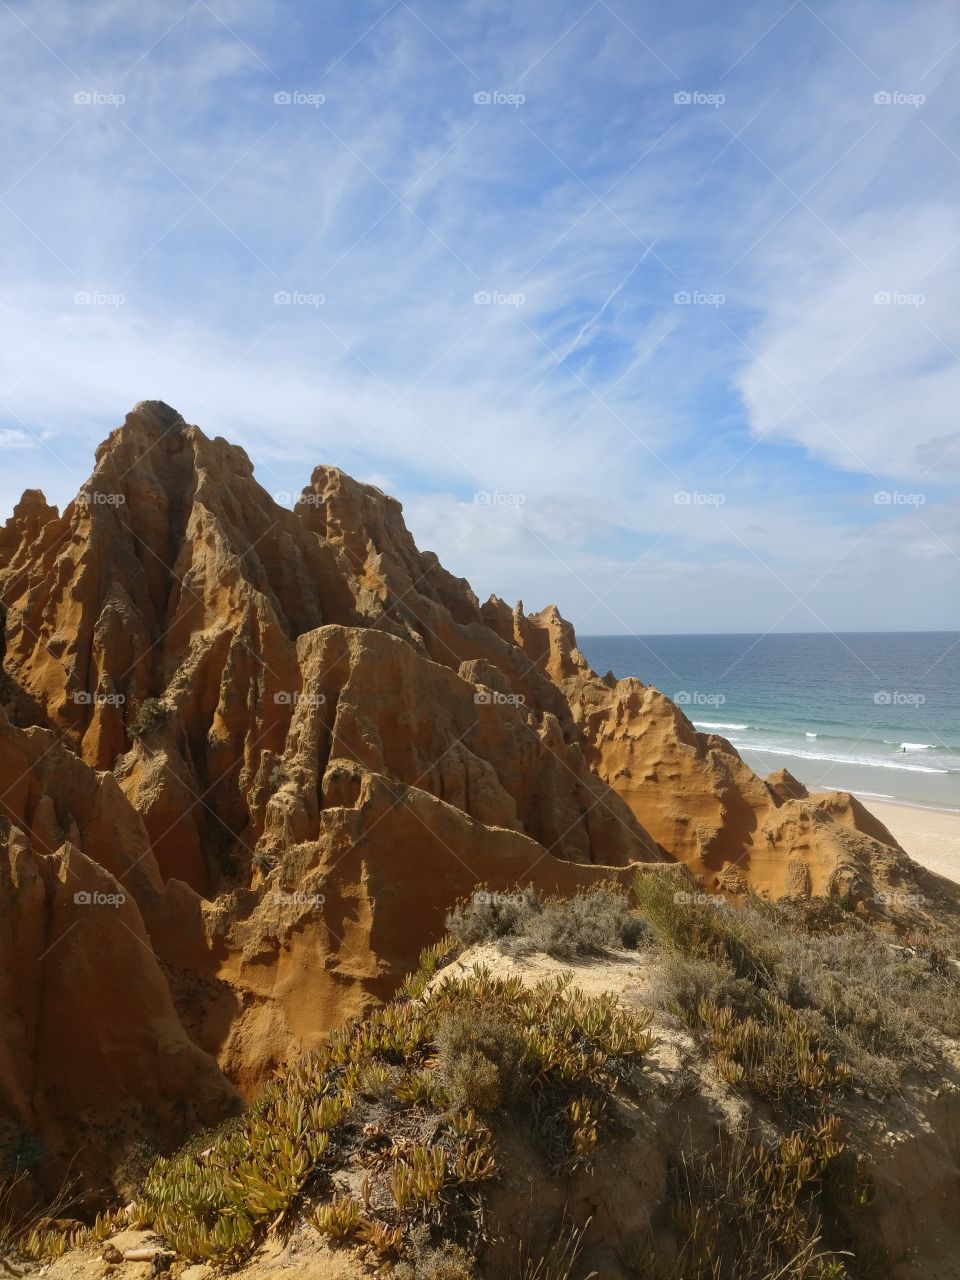 Beach cliffs